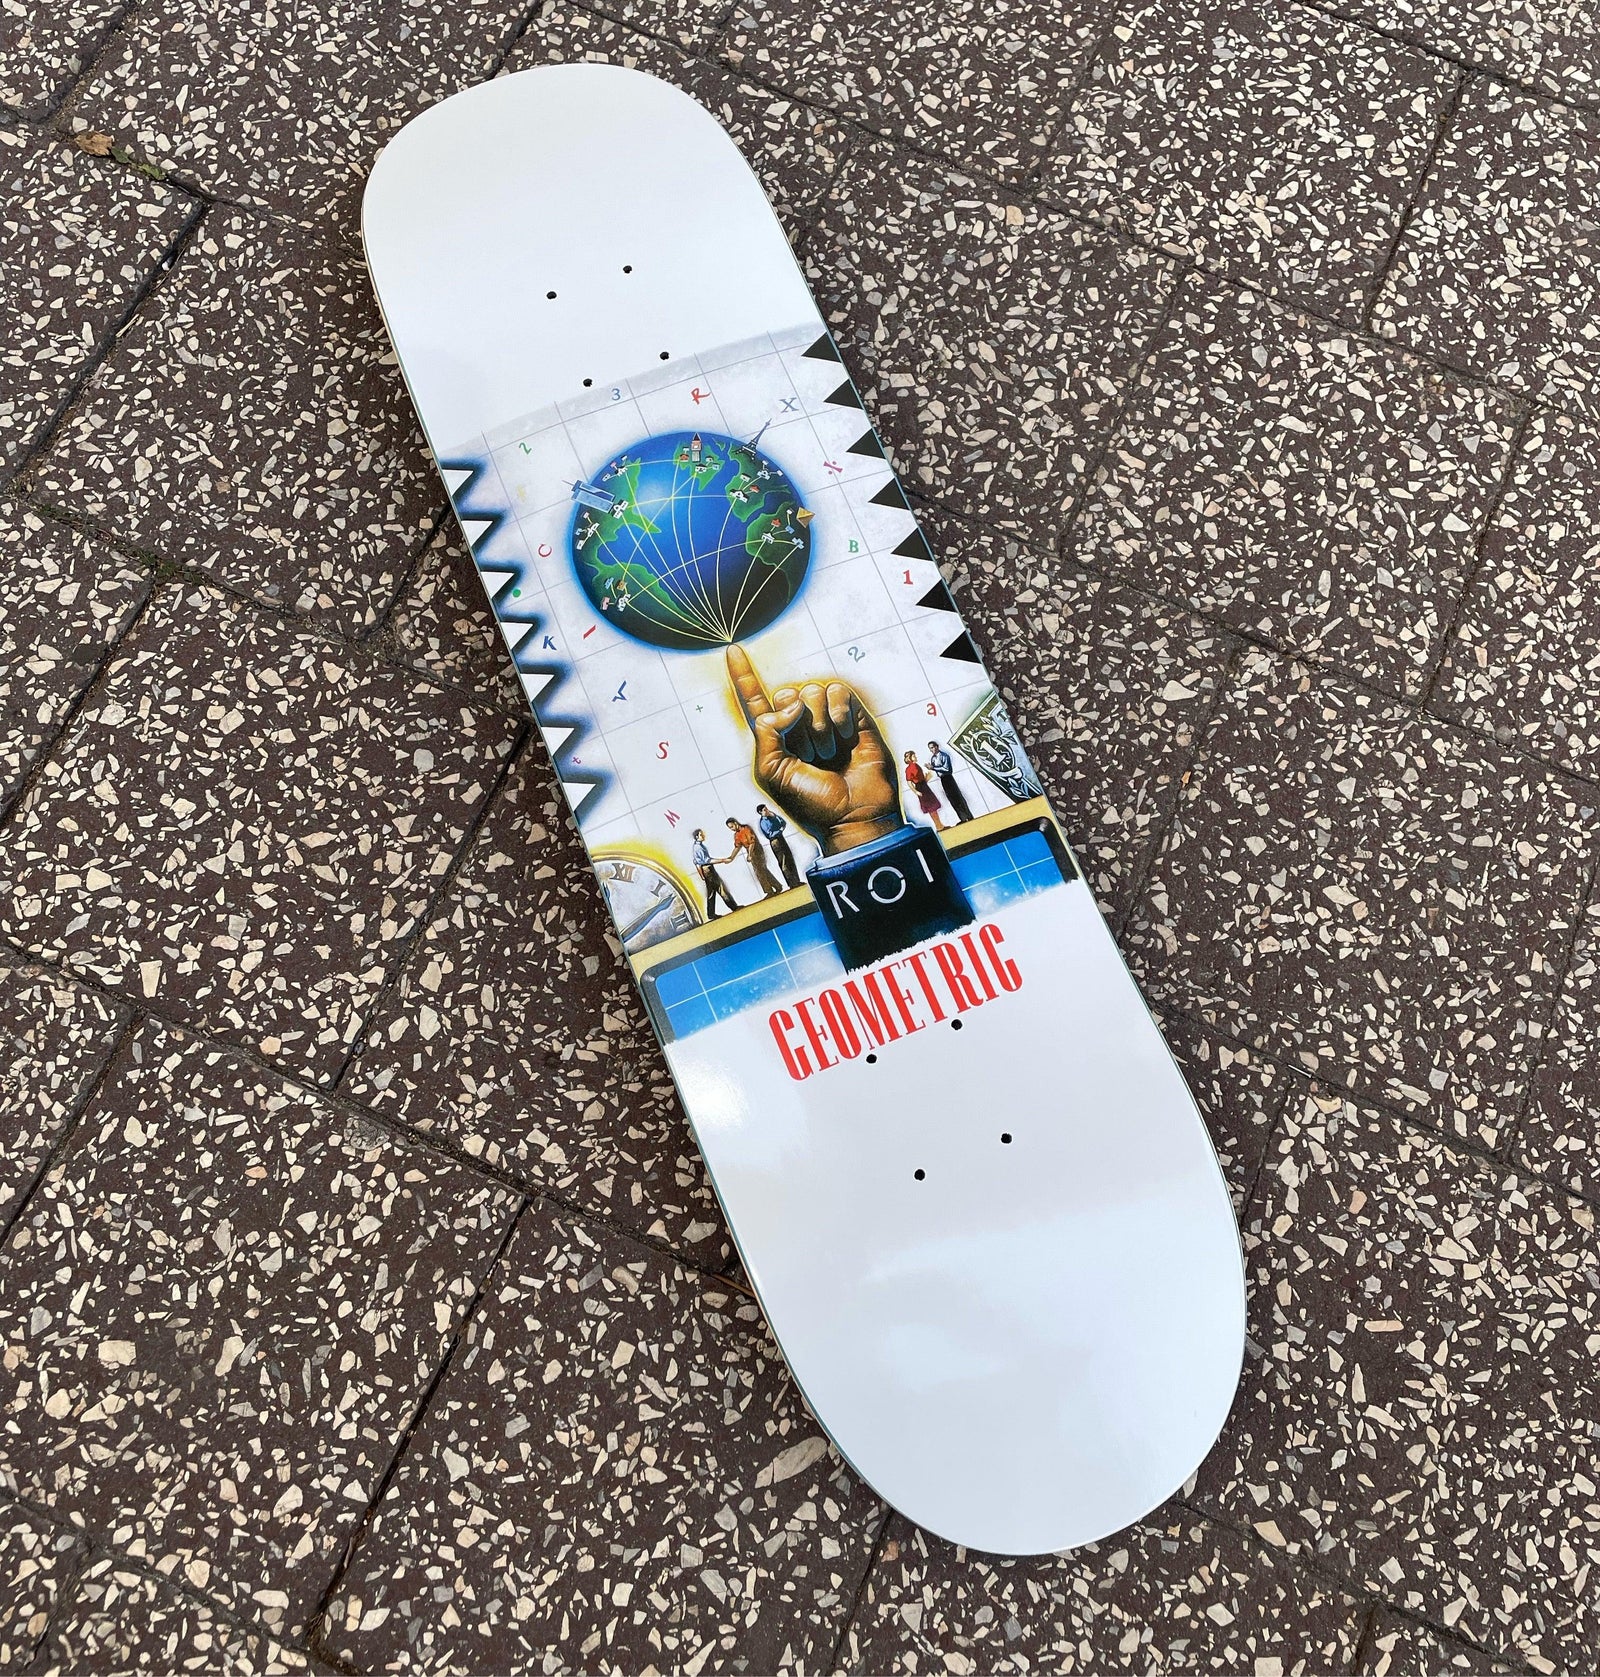 Gift Card – Amigos Skate Shop